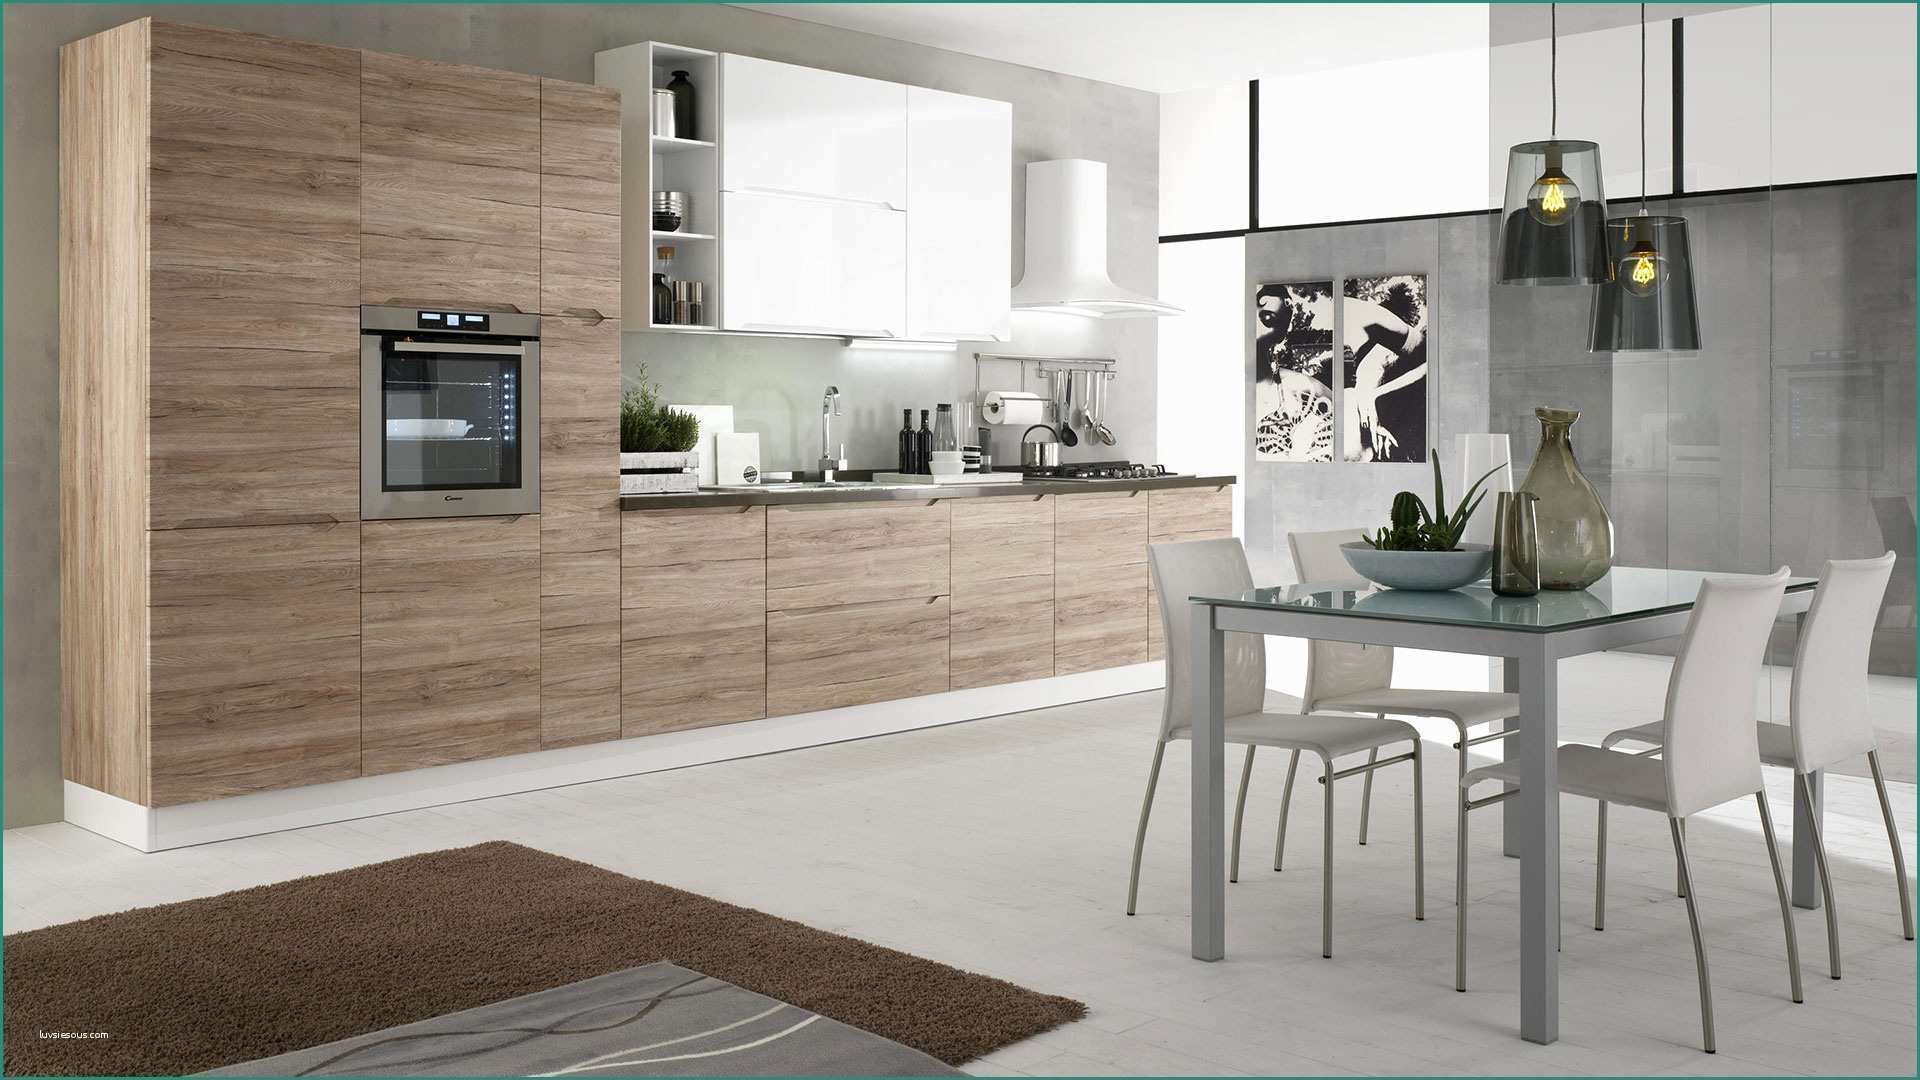 Cucina Bianca Laccata E Immagini Di Cucine Moderne Excellent soggiorno Open Space soggiorno